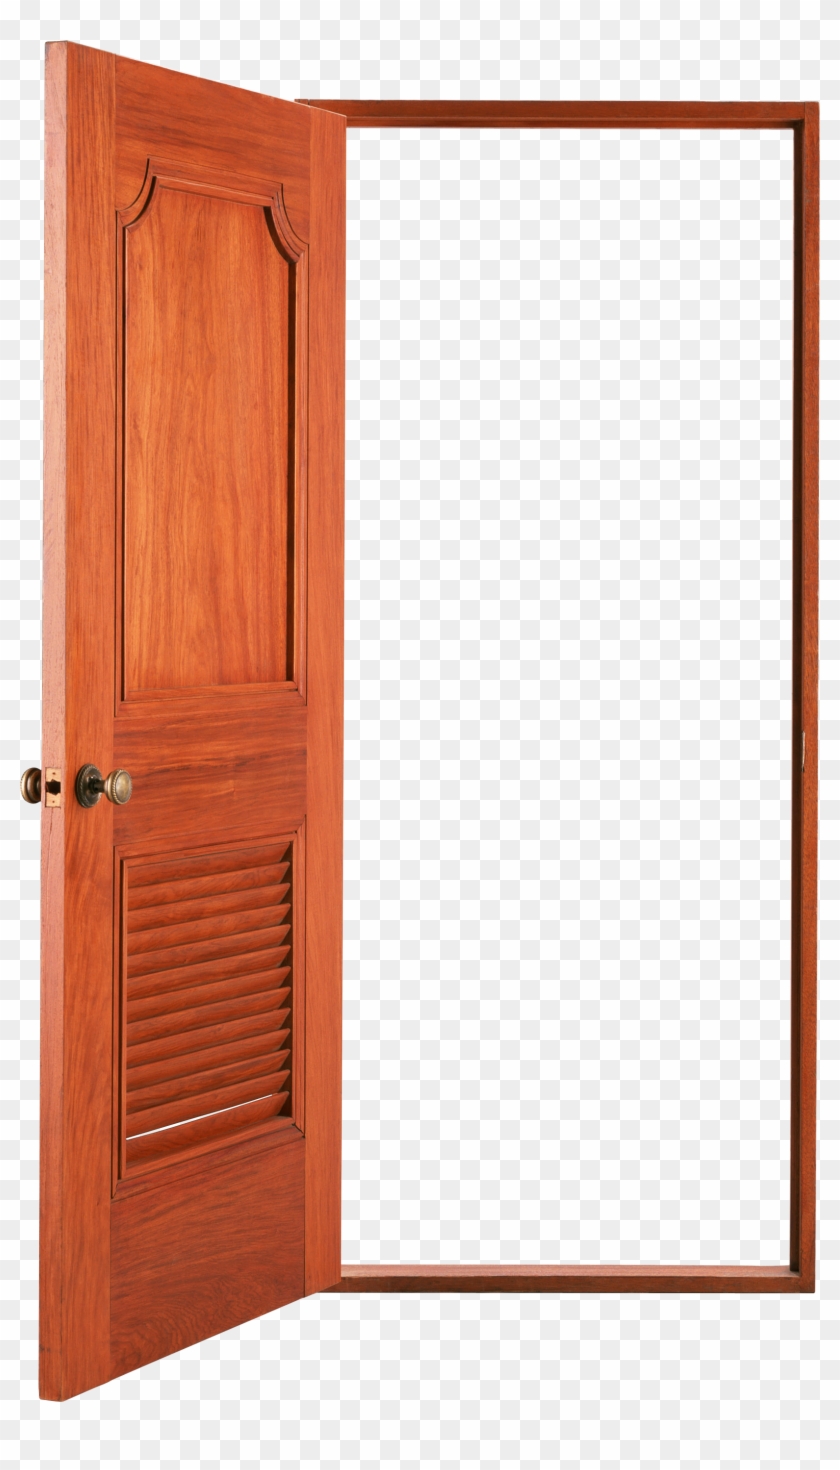 Open Clip Art - Open Wood Door Png #1132642